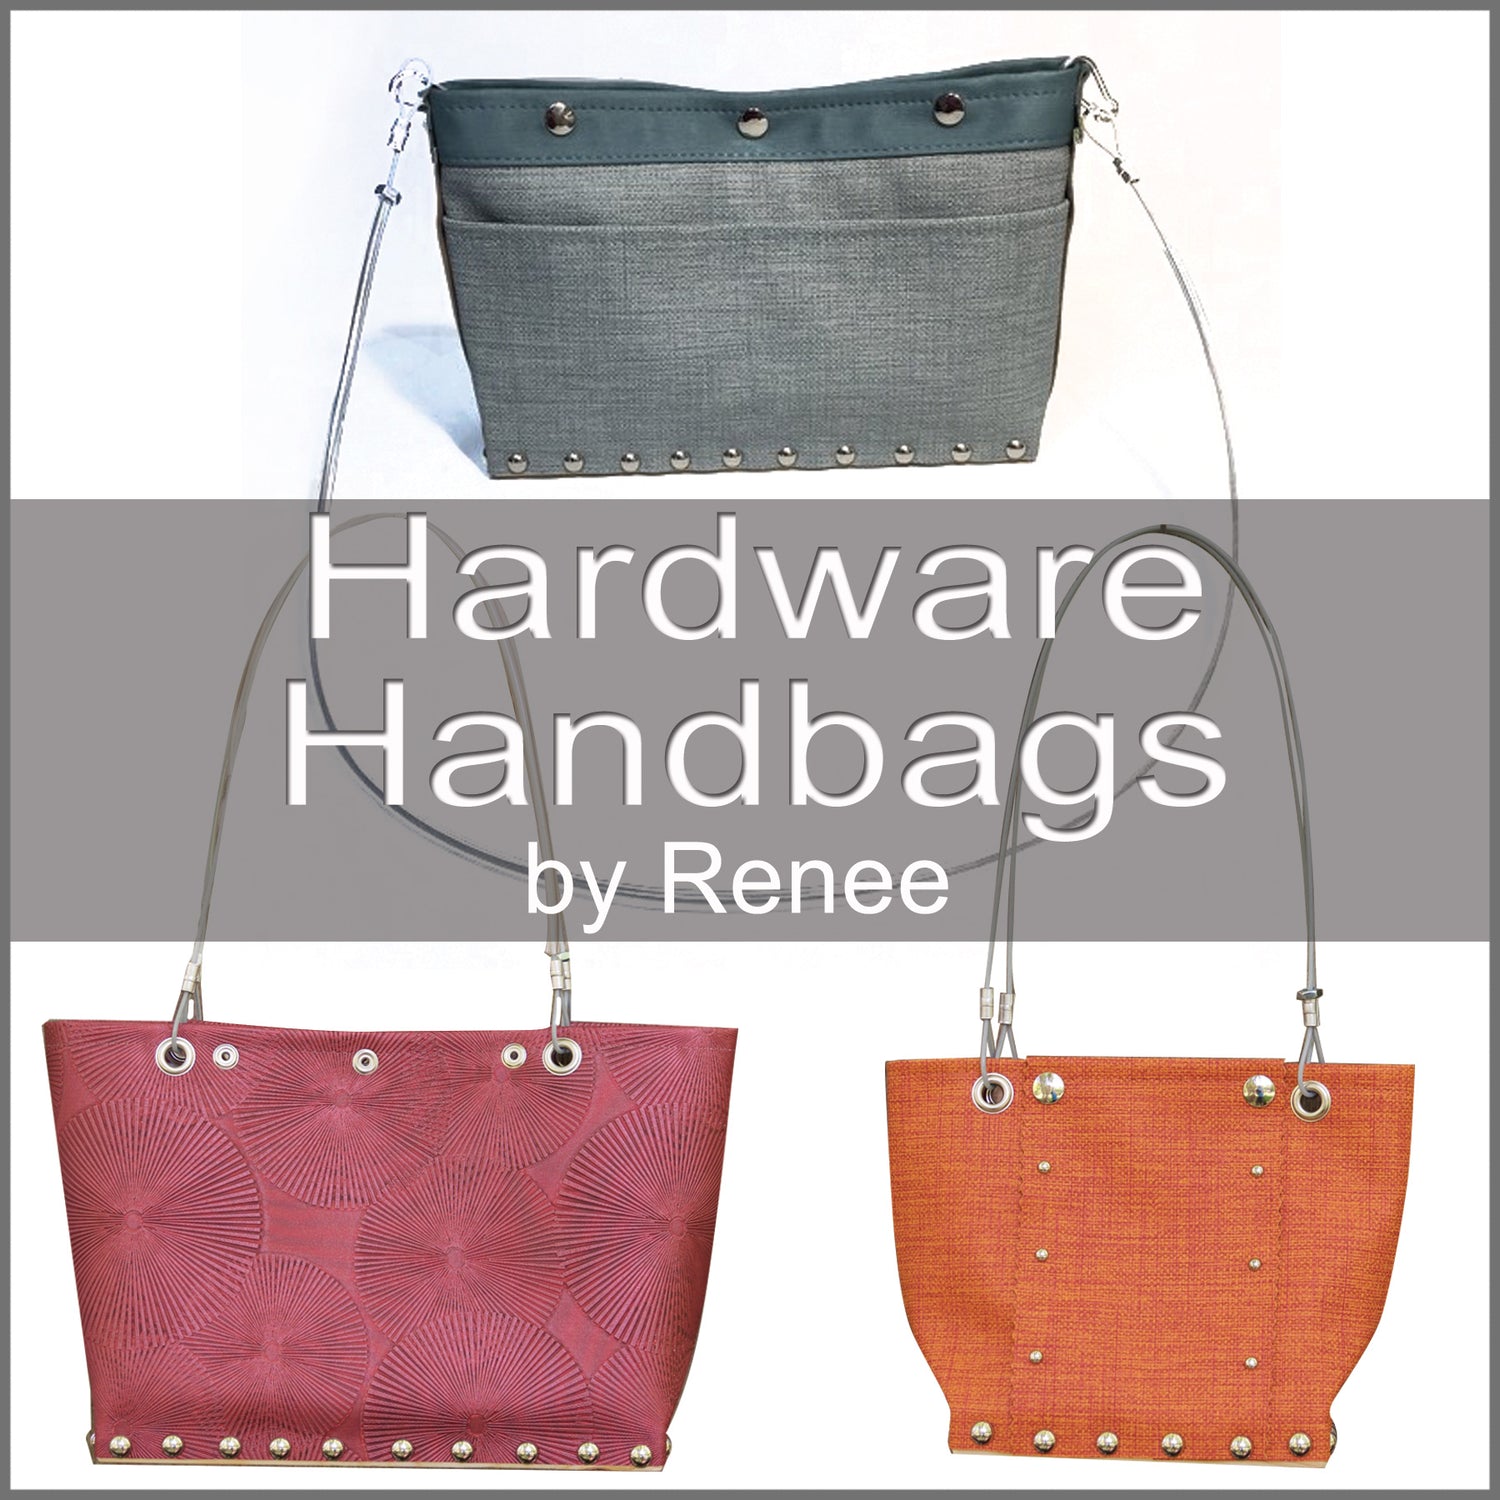 Handbags by Renee